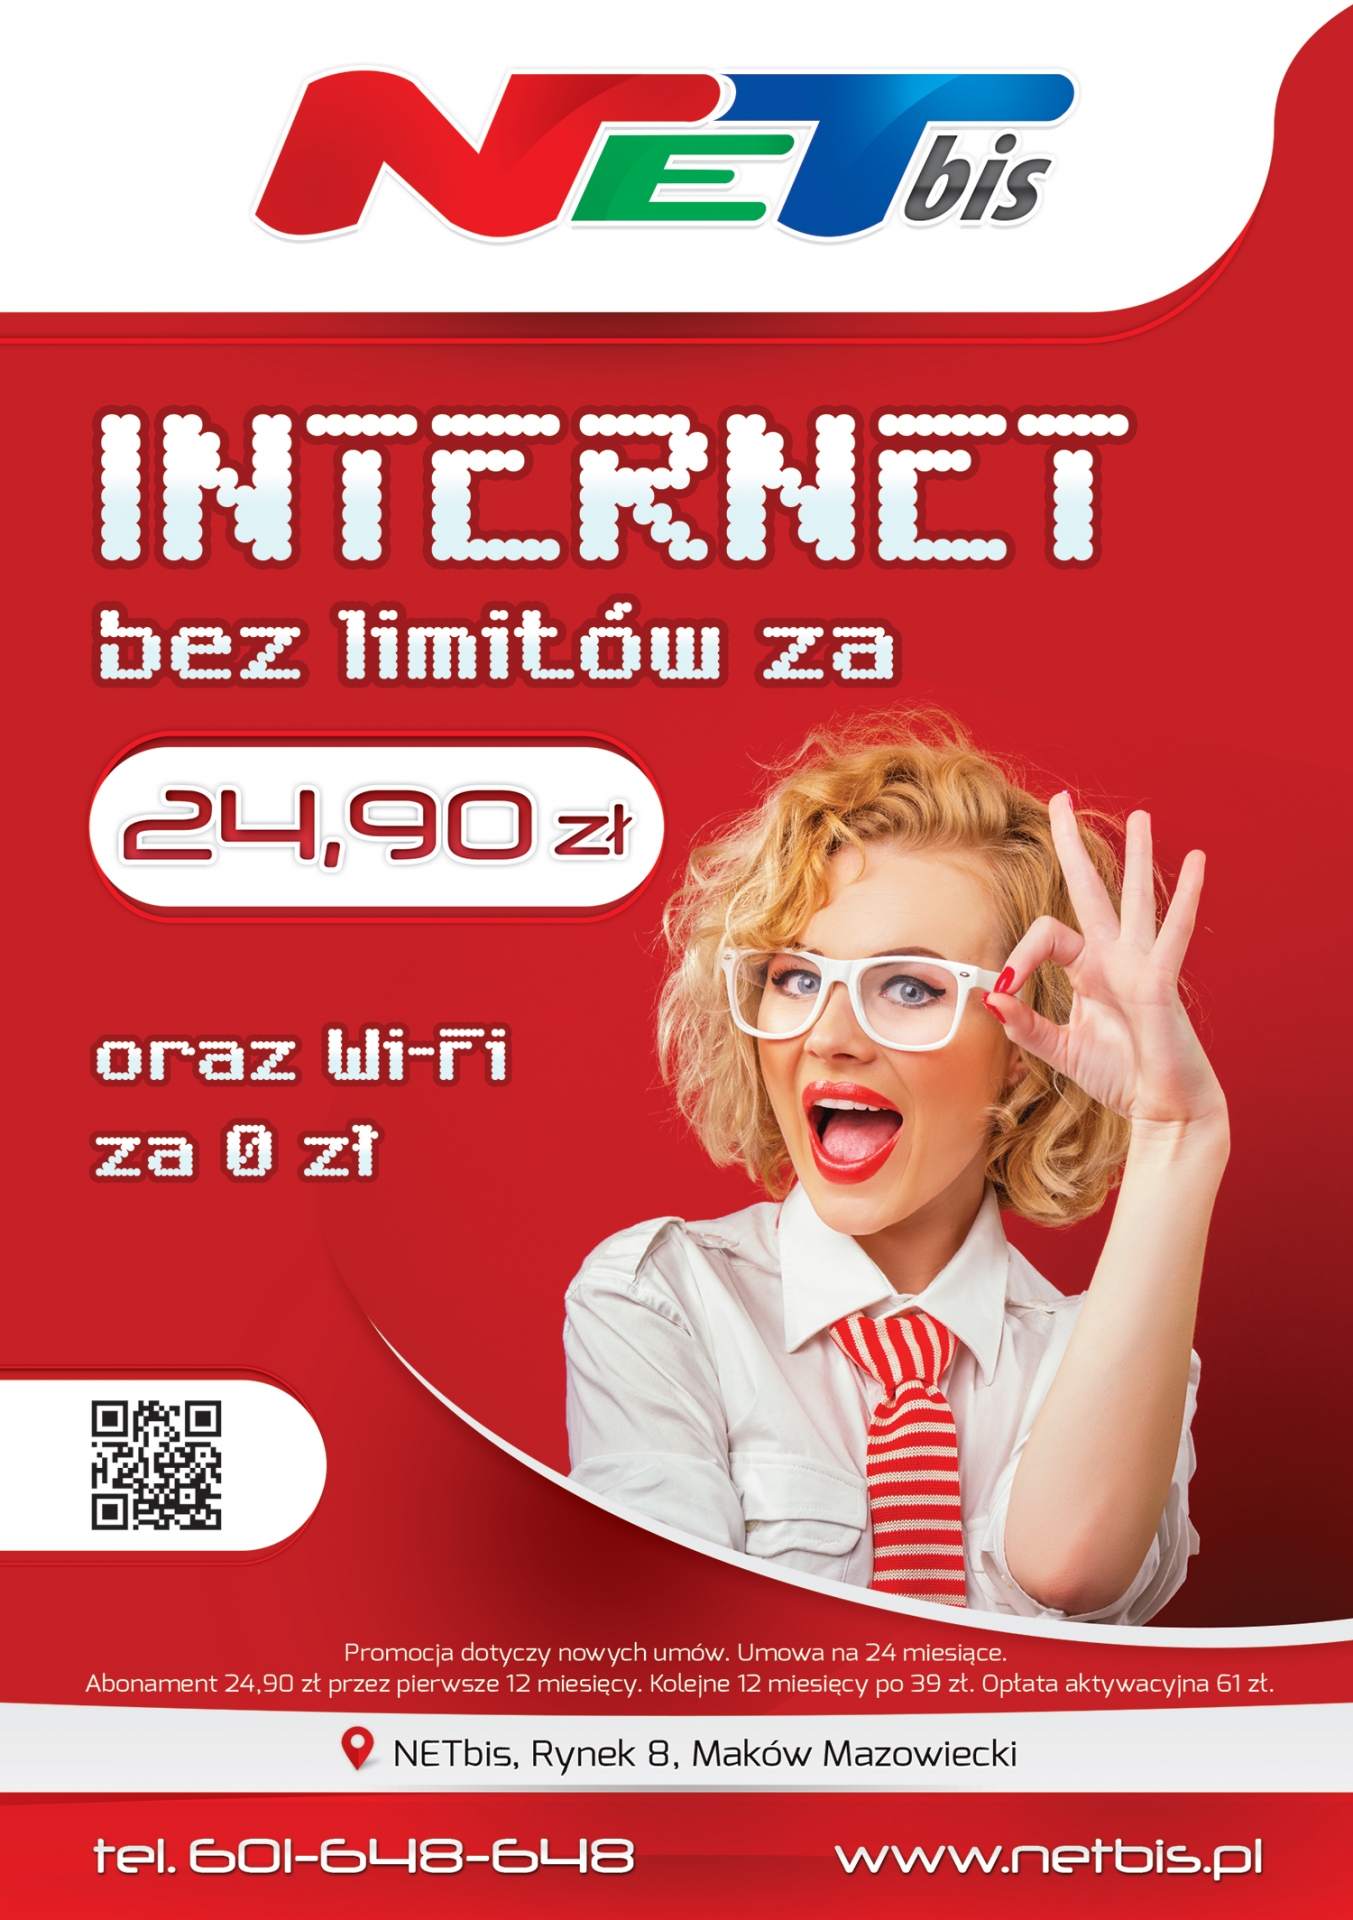 NETbis - Internet bez limitów. Prezentacja ulotki A5. Dwustronna ulotka dla ISP. Przód czerwonej ulotki z piekną kobietą w okularach